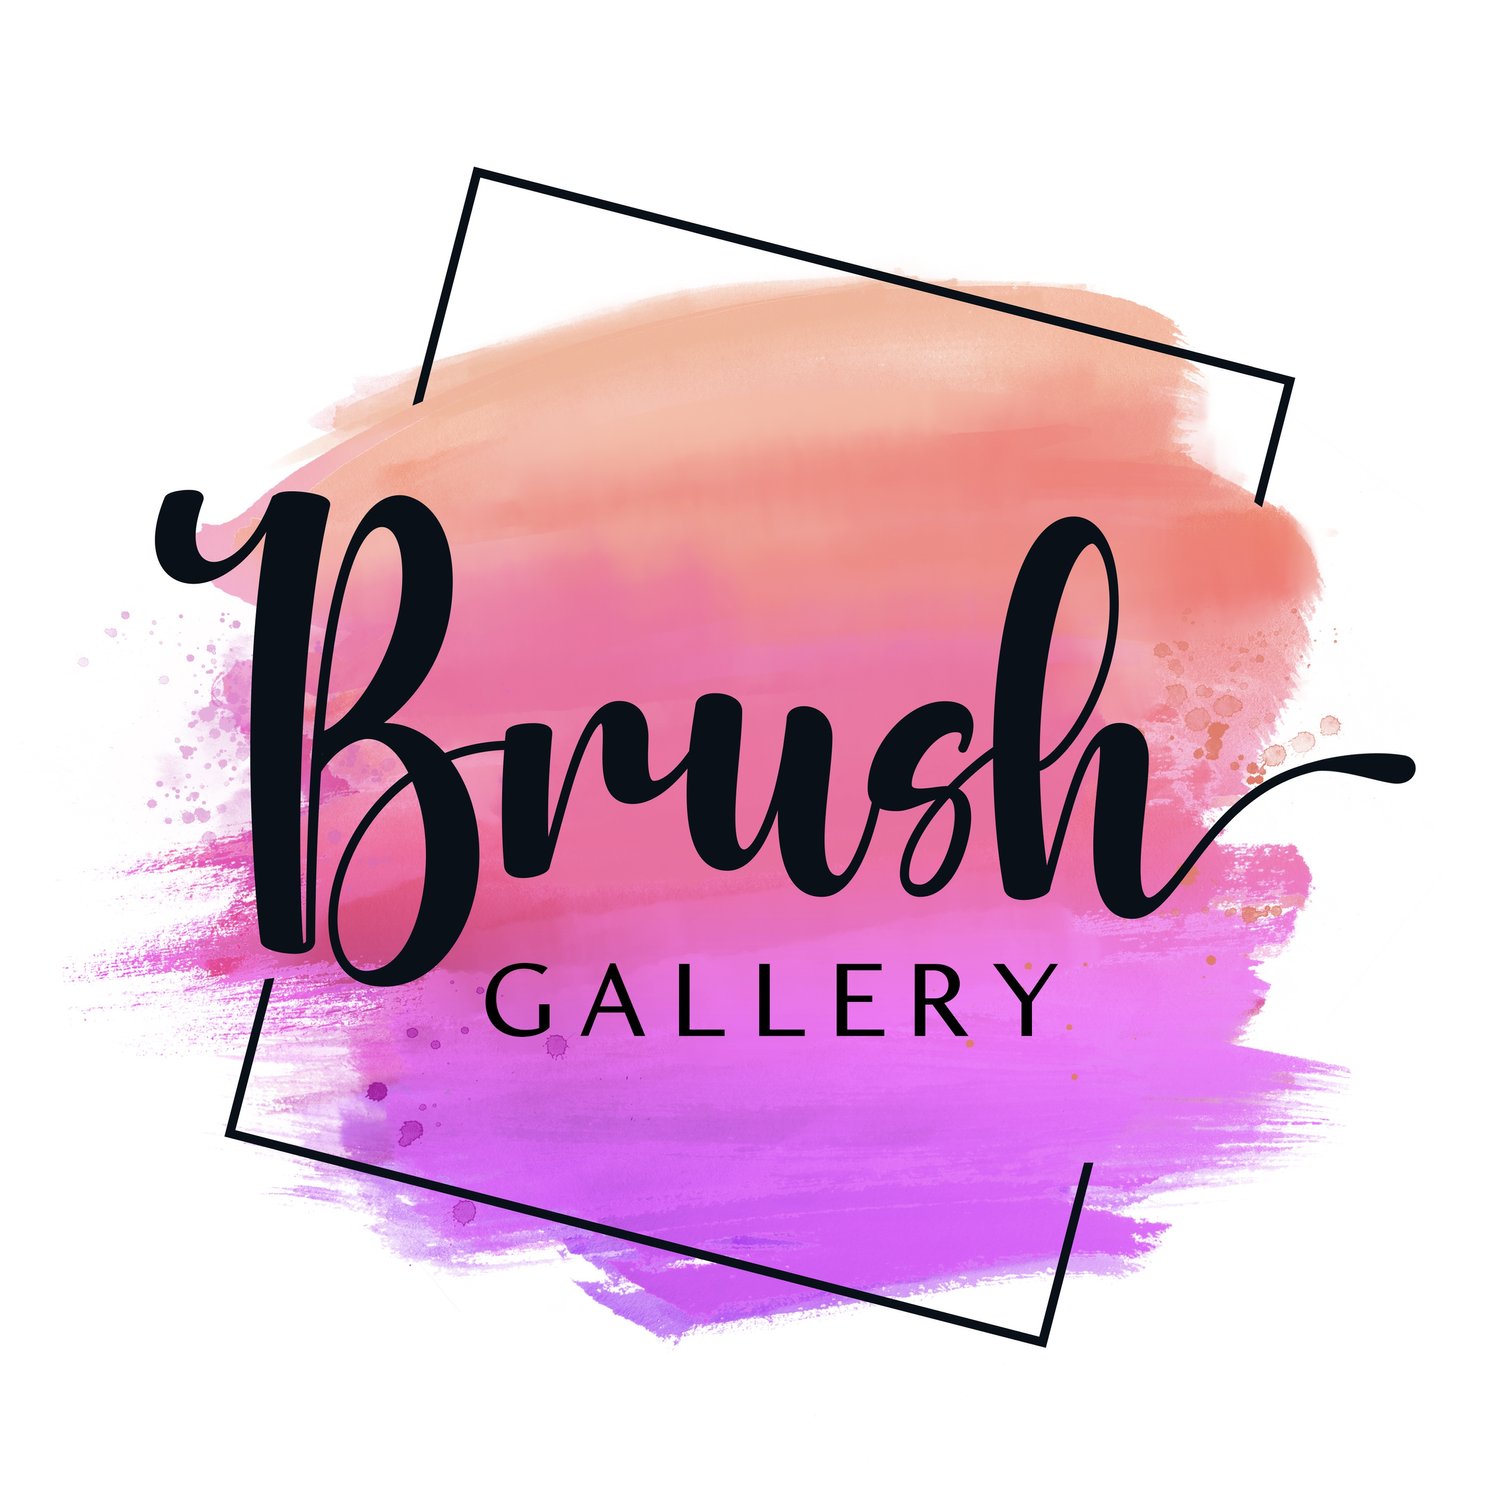 Brush Gallery